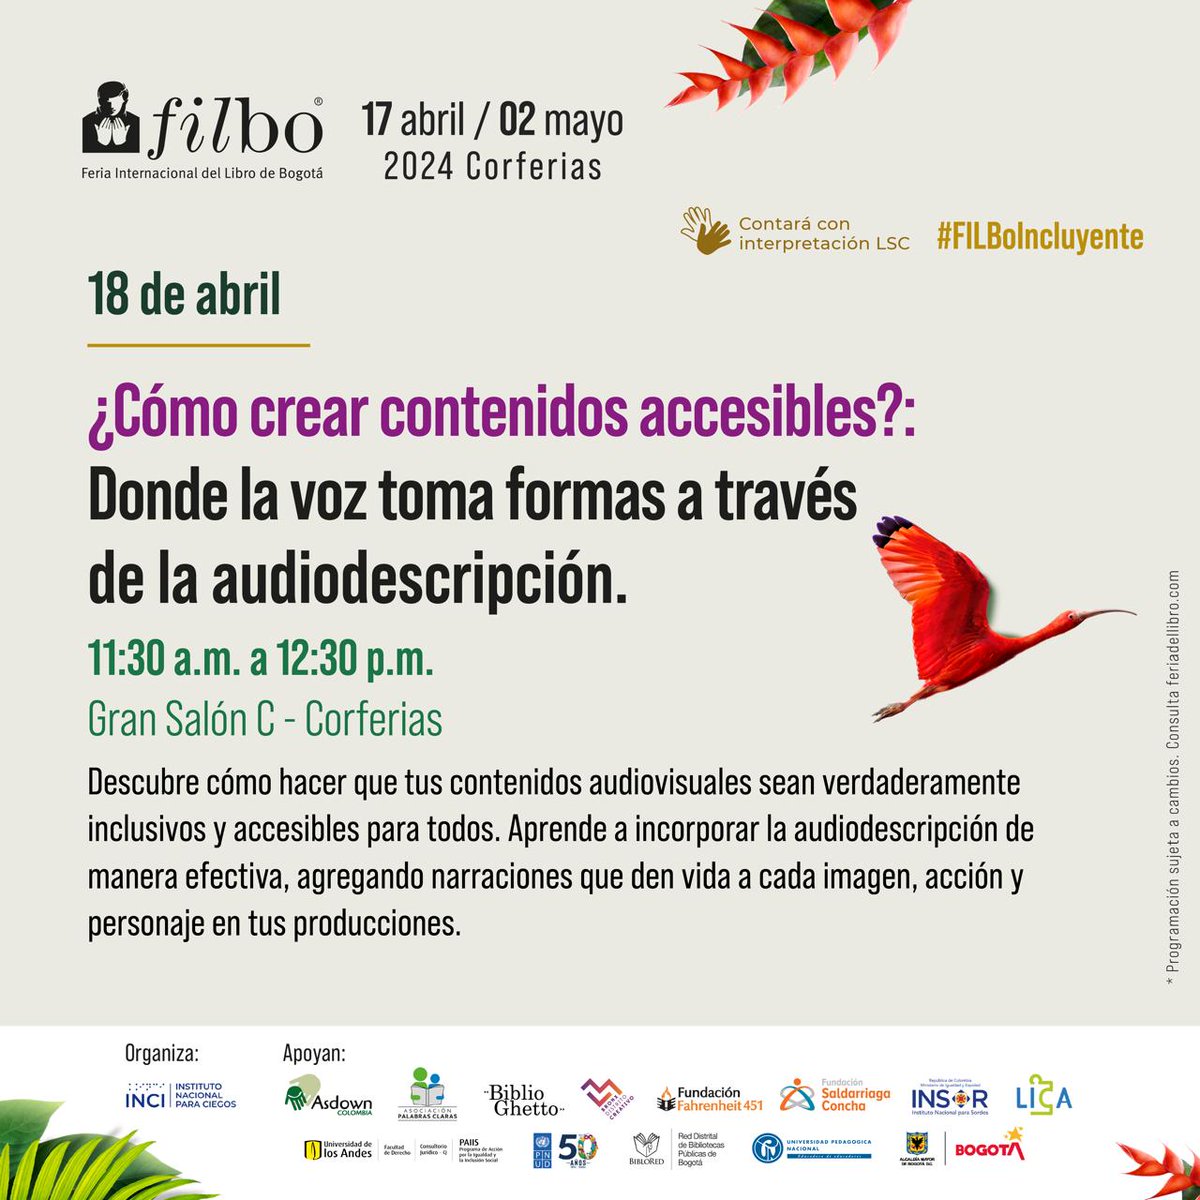 El @INCI_colombia los invita al conversatorio sobre audiodescripción en la @FILBogota este 18 de abril a partir de las 11:30 AM en el Gran Salón C de @CorferiasBogota y conozca cómo crear contenidos audiovisuales accesibles para personas con discapacidad visual. #FilboIncluyente